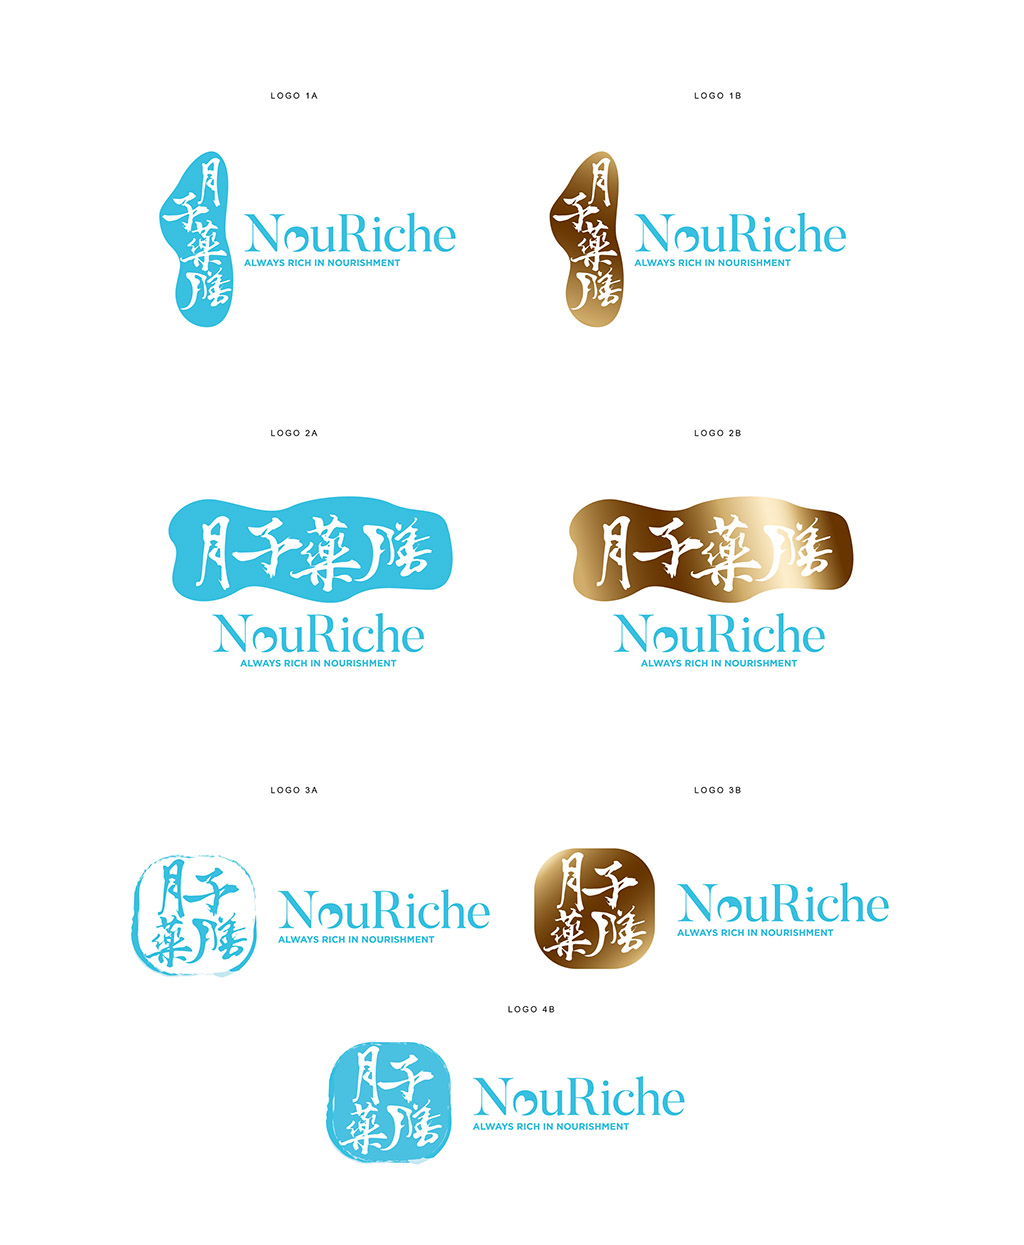 nouriche logo design mock up variations and samples